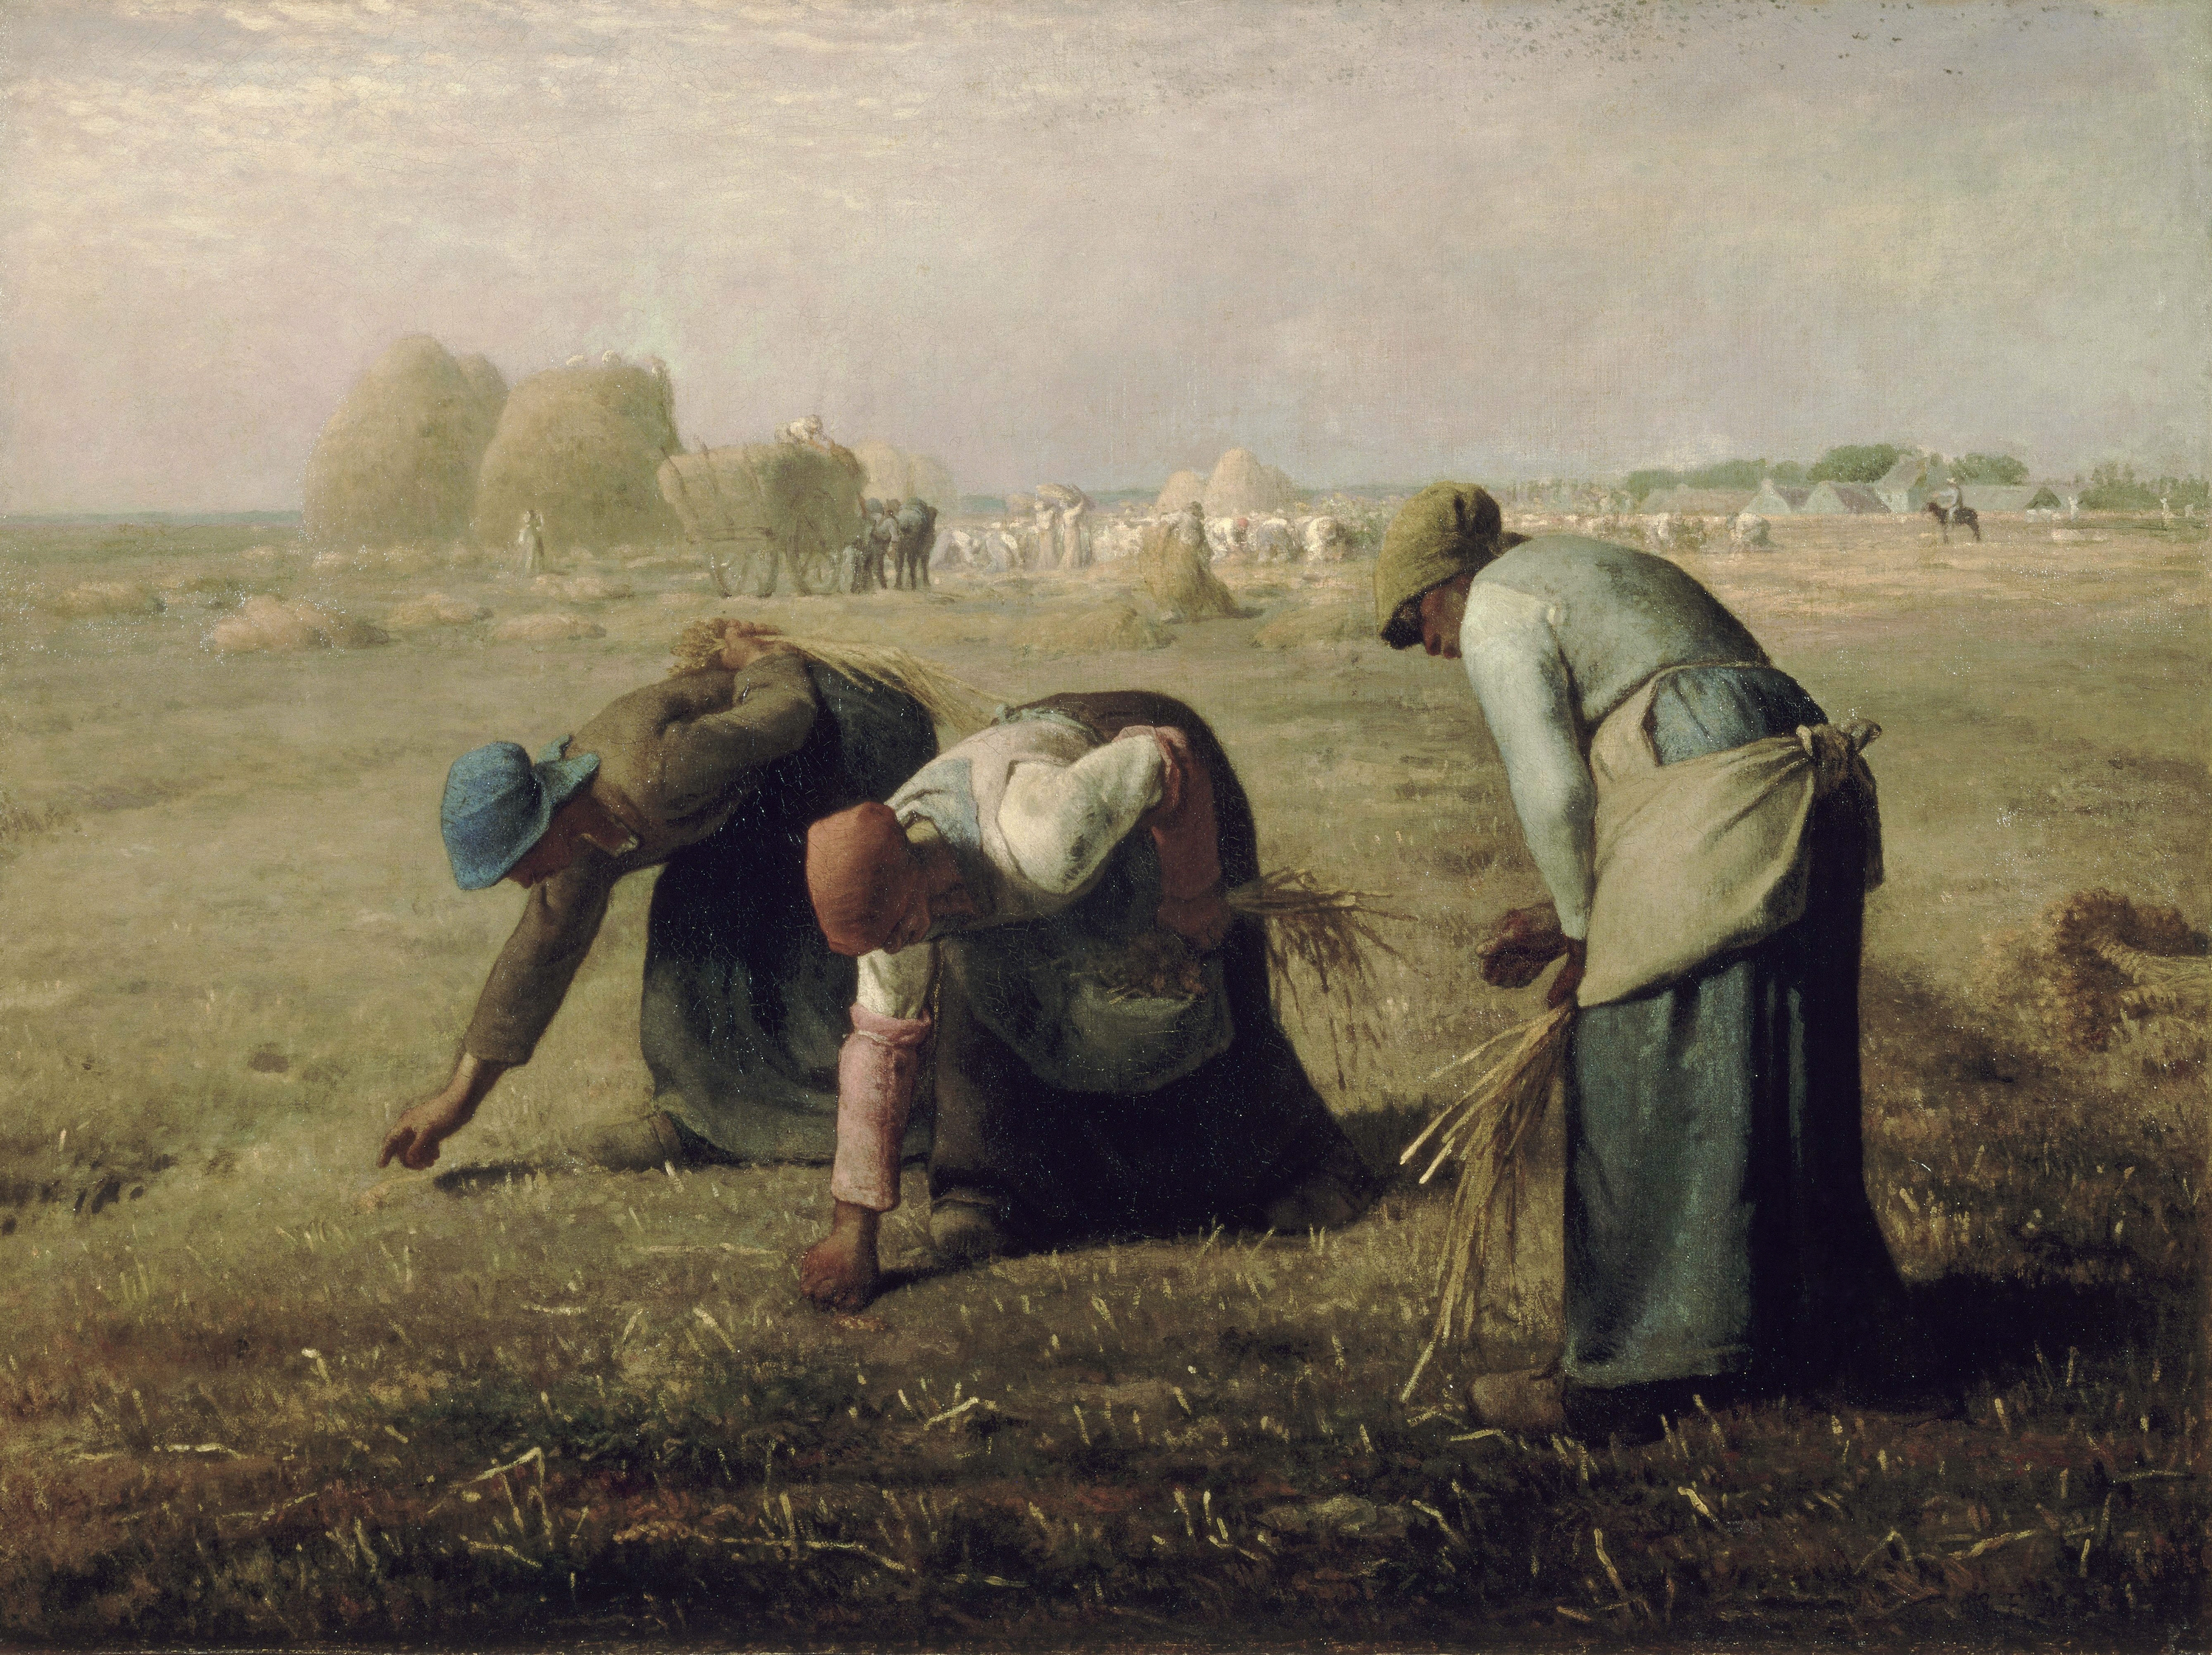 Le spigolatrici by Jean-François Millet - 1857 - 83.8 × 111.8 cm Musée d'Orsay